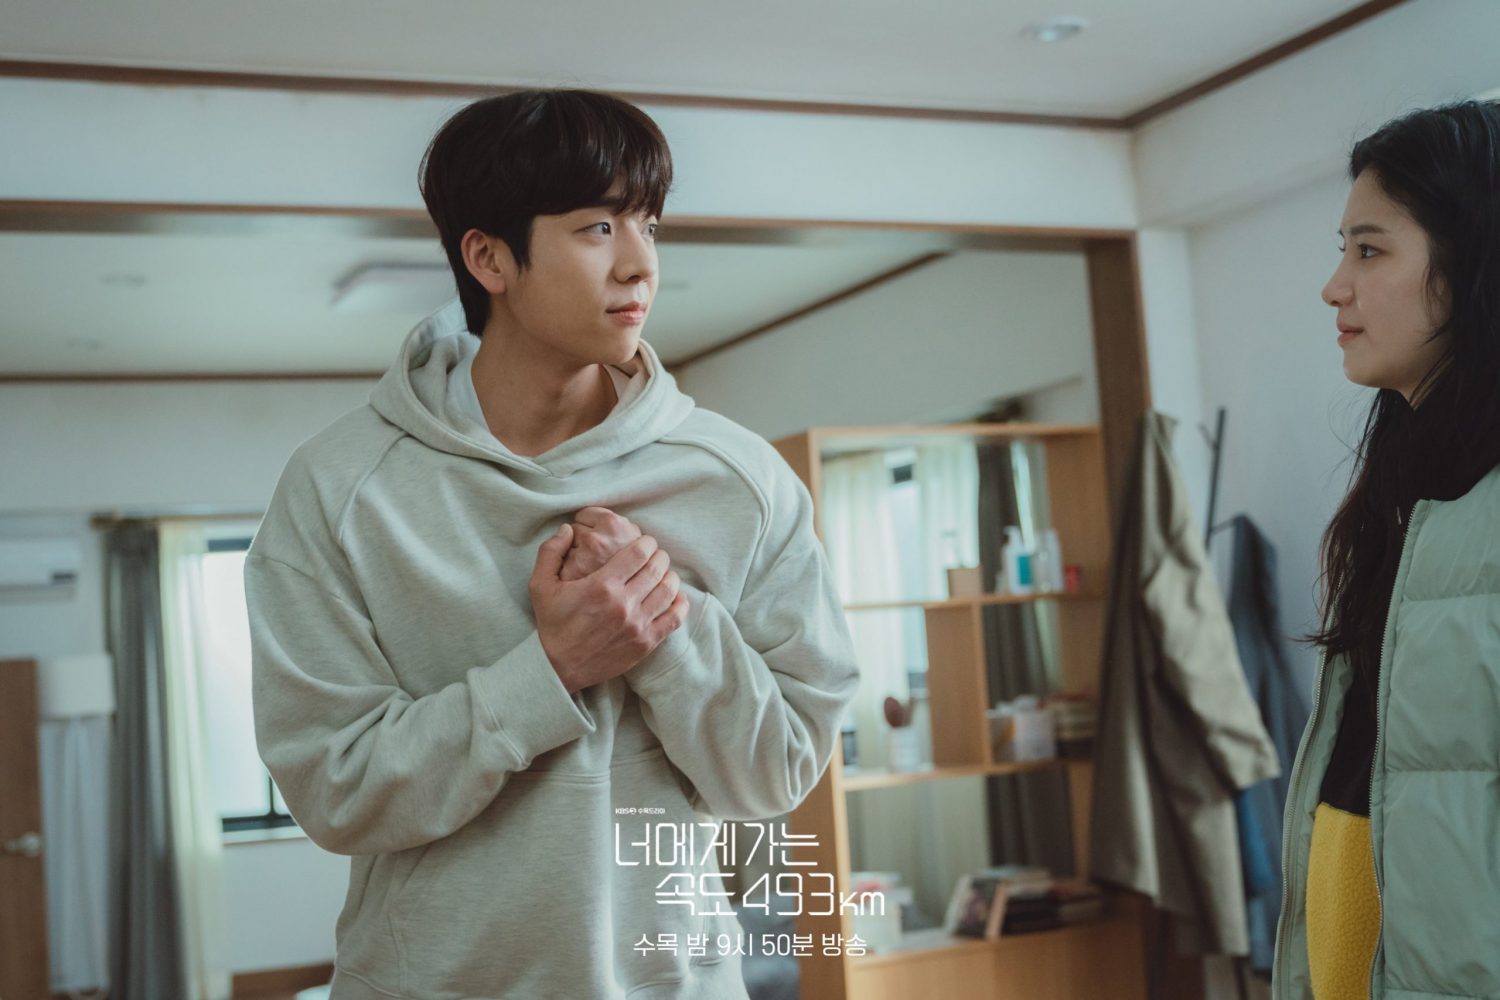 Phim mới của Chae Jong Hyeop: Chạy về phía em với tốc độ 493 km - Love All Play (2022)